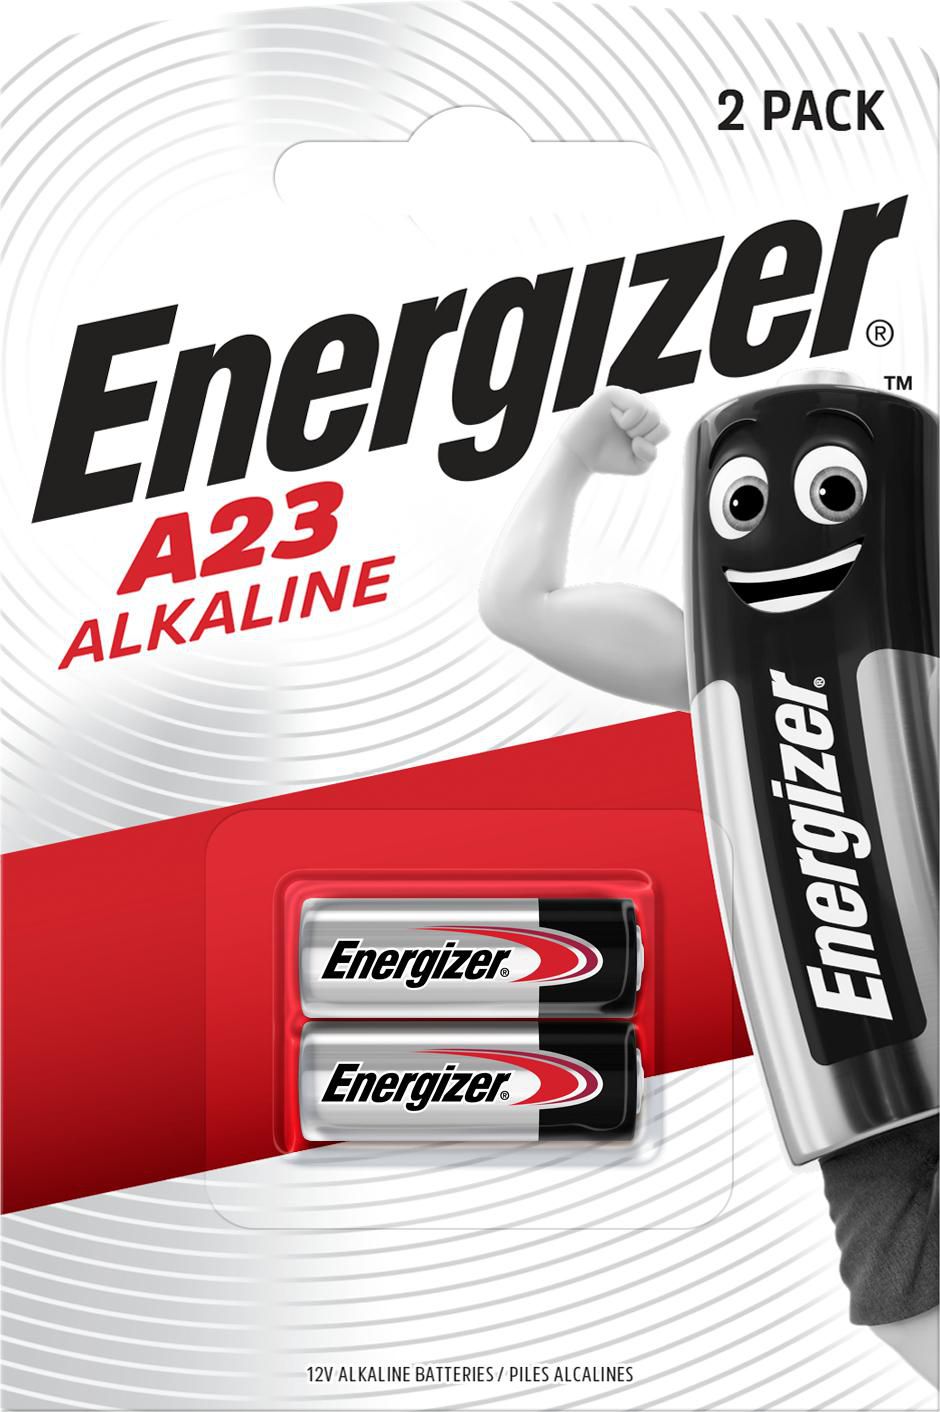 ENERGIZER Alkaline battery A23 12V 2-blister - Energizer alkaline battery, model A23, 12 Volt. 2 Bat